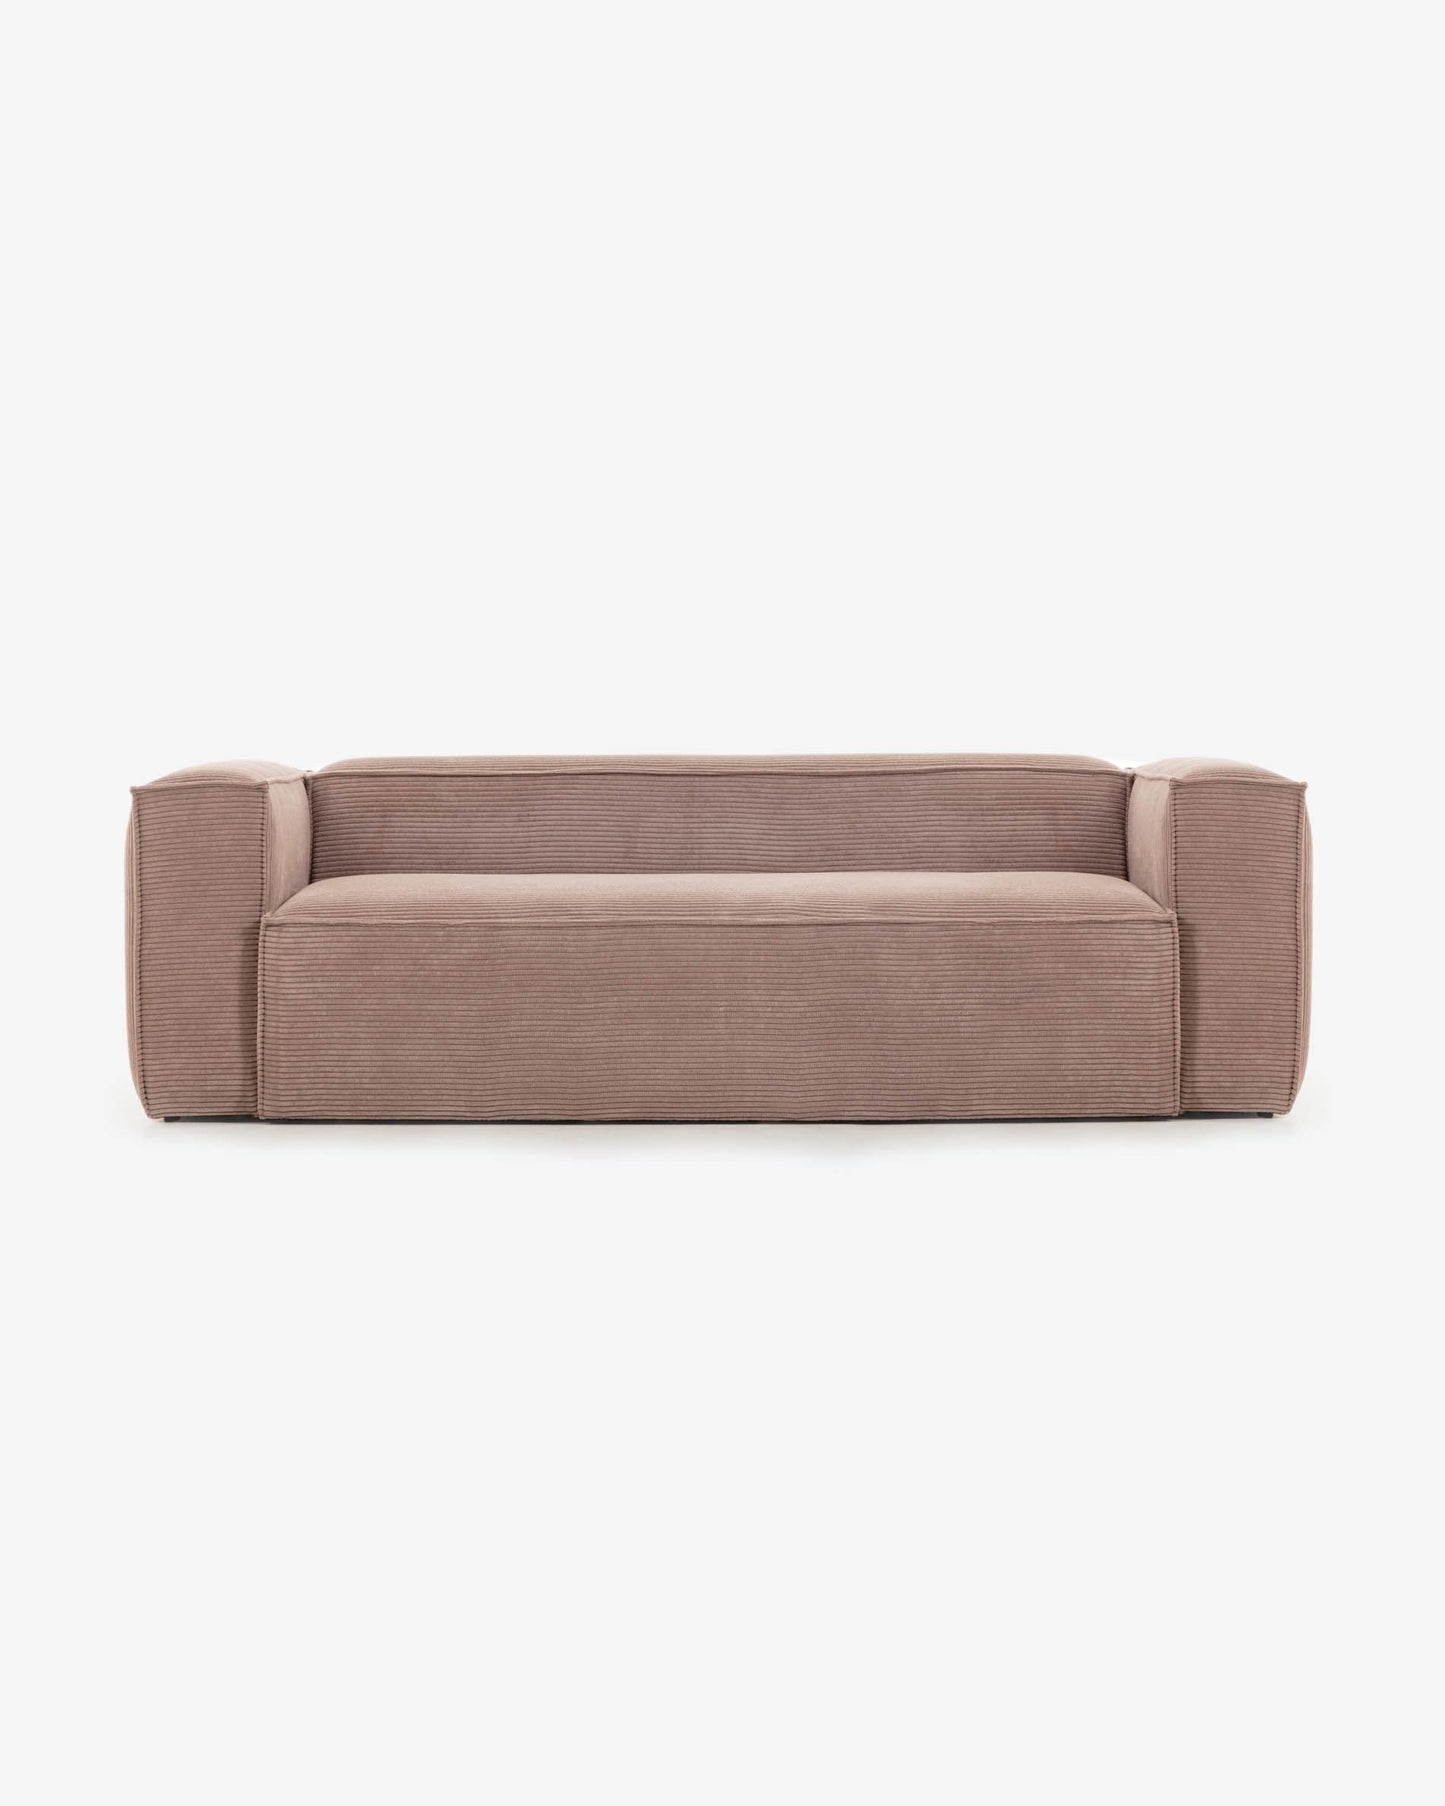 
                  
                    KORDSCHI - 2-Sitzer Sofa mit altrosa Kord
                  
                